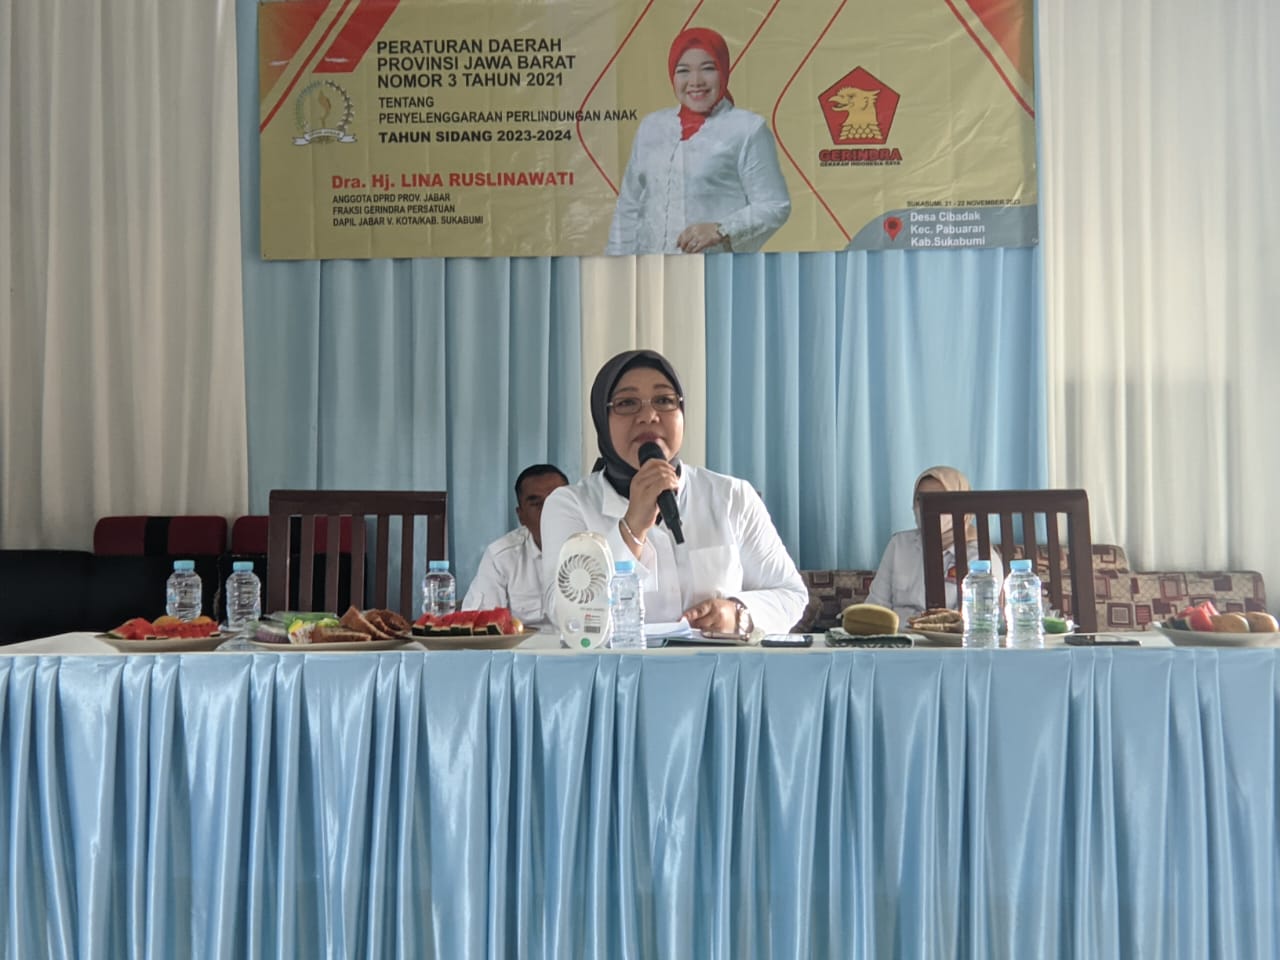 Anggota DPRD Jawa Barat dari Fraksi Gerindra Lina Ruslinawati mengatakan bahwa adanya kasih sayang orang adalah kunci dalam mendidik anak